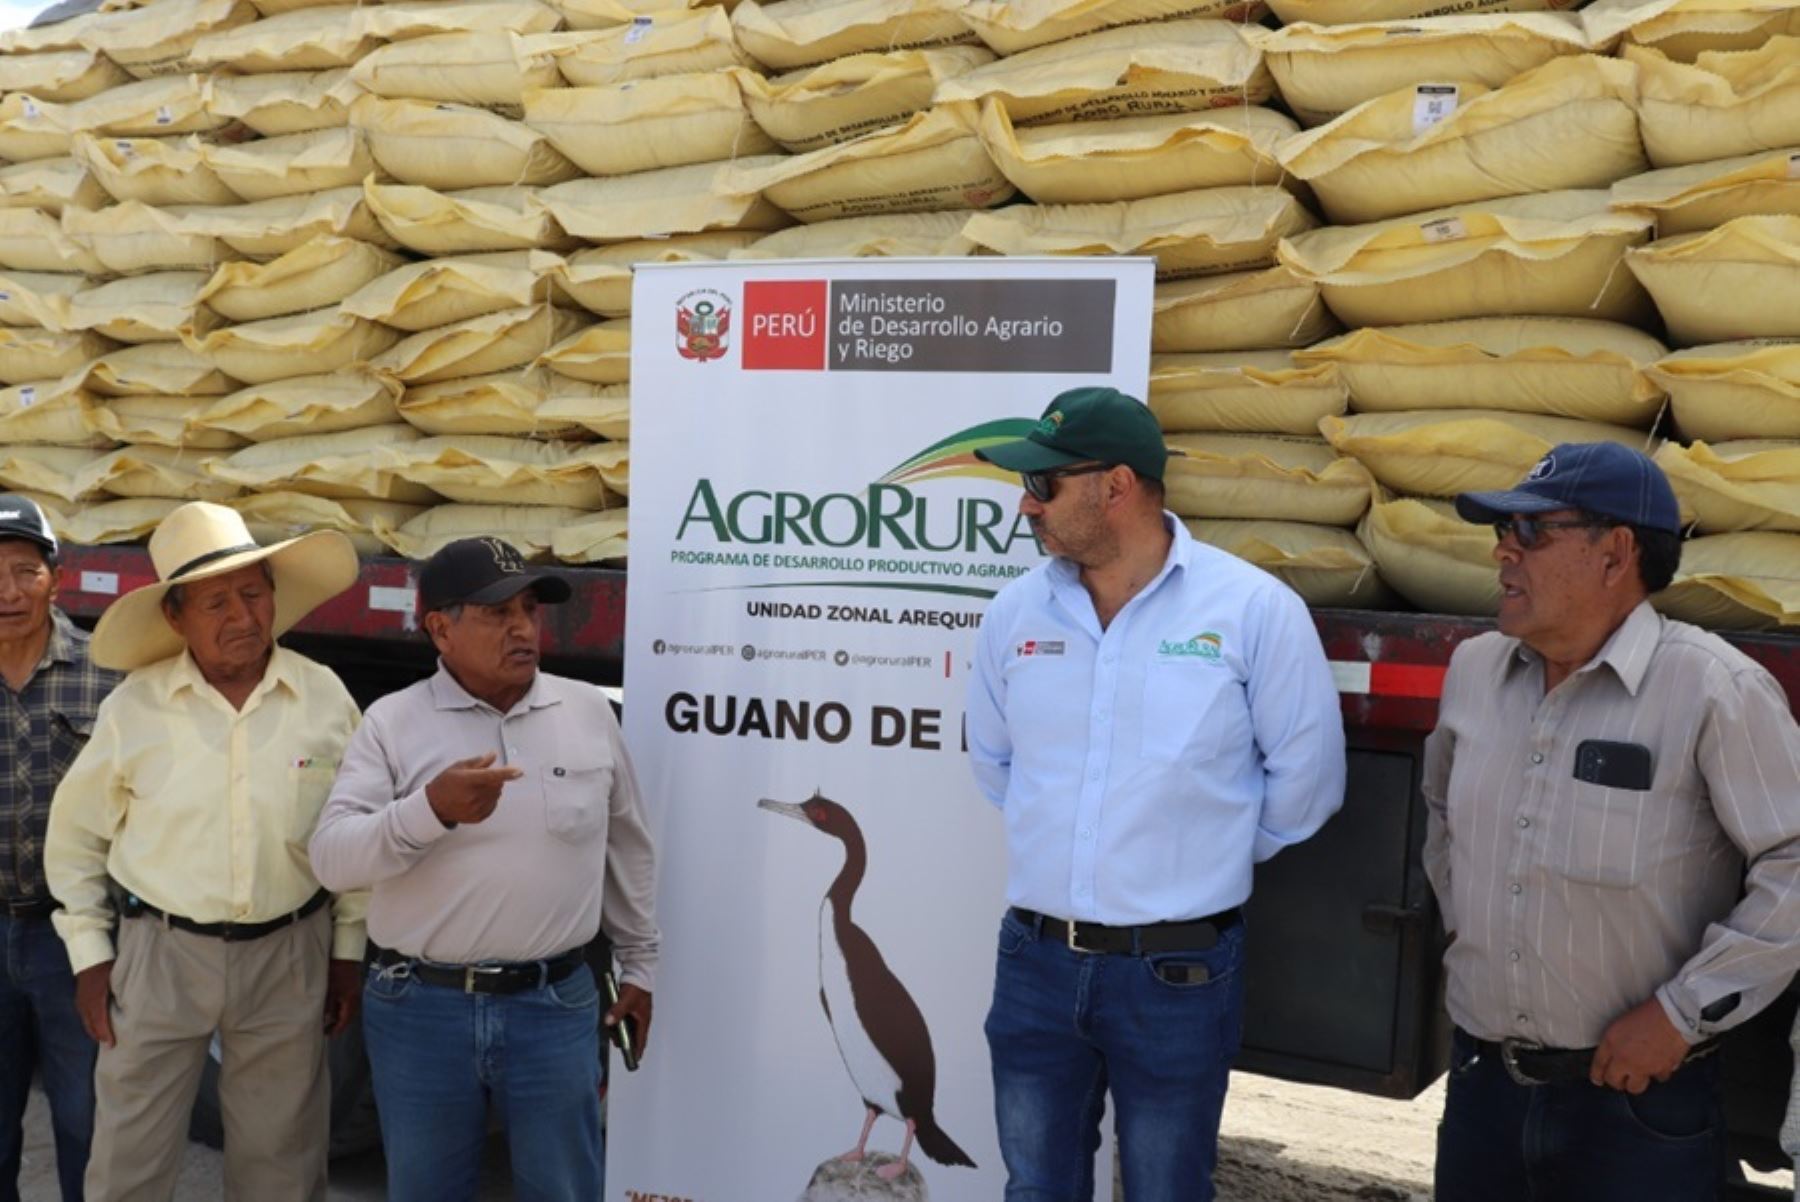 Agro Rural del Ministerio de Desarrollo Agrario y Riego, es el único ente autorizado para la venta y distribución de guano de isla.